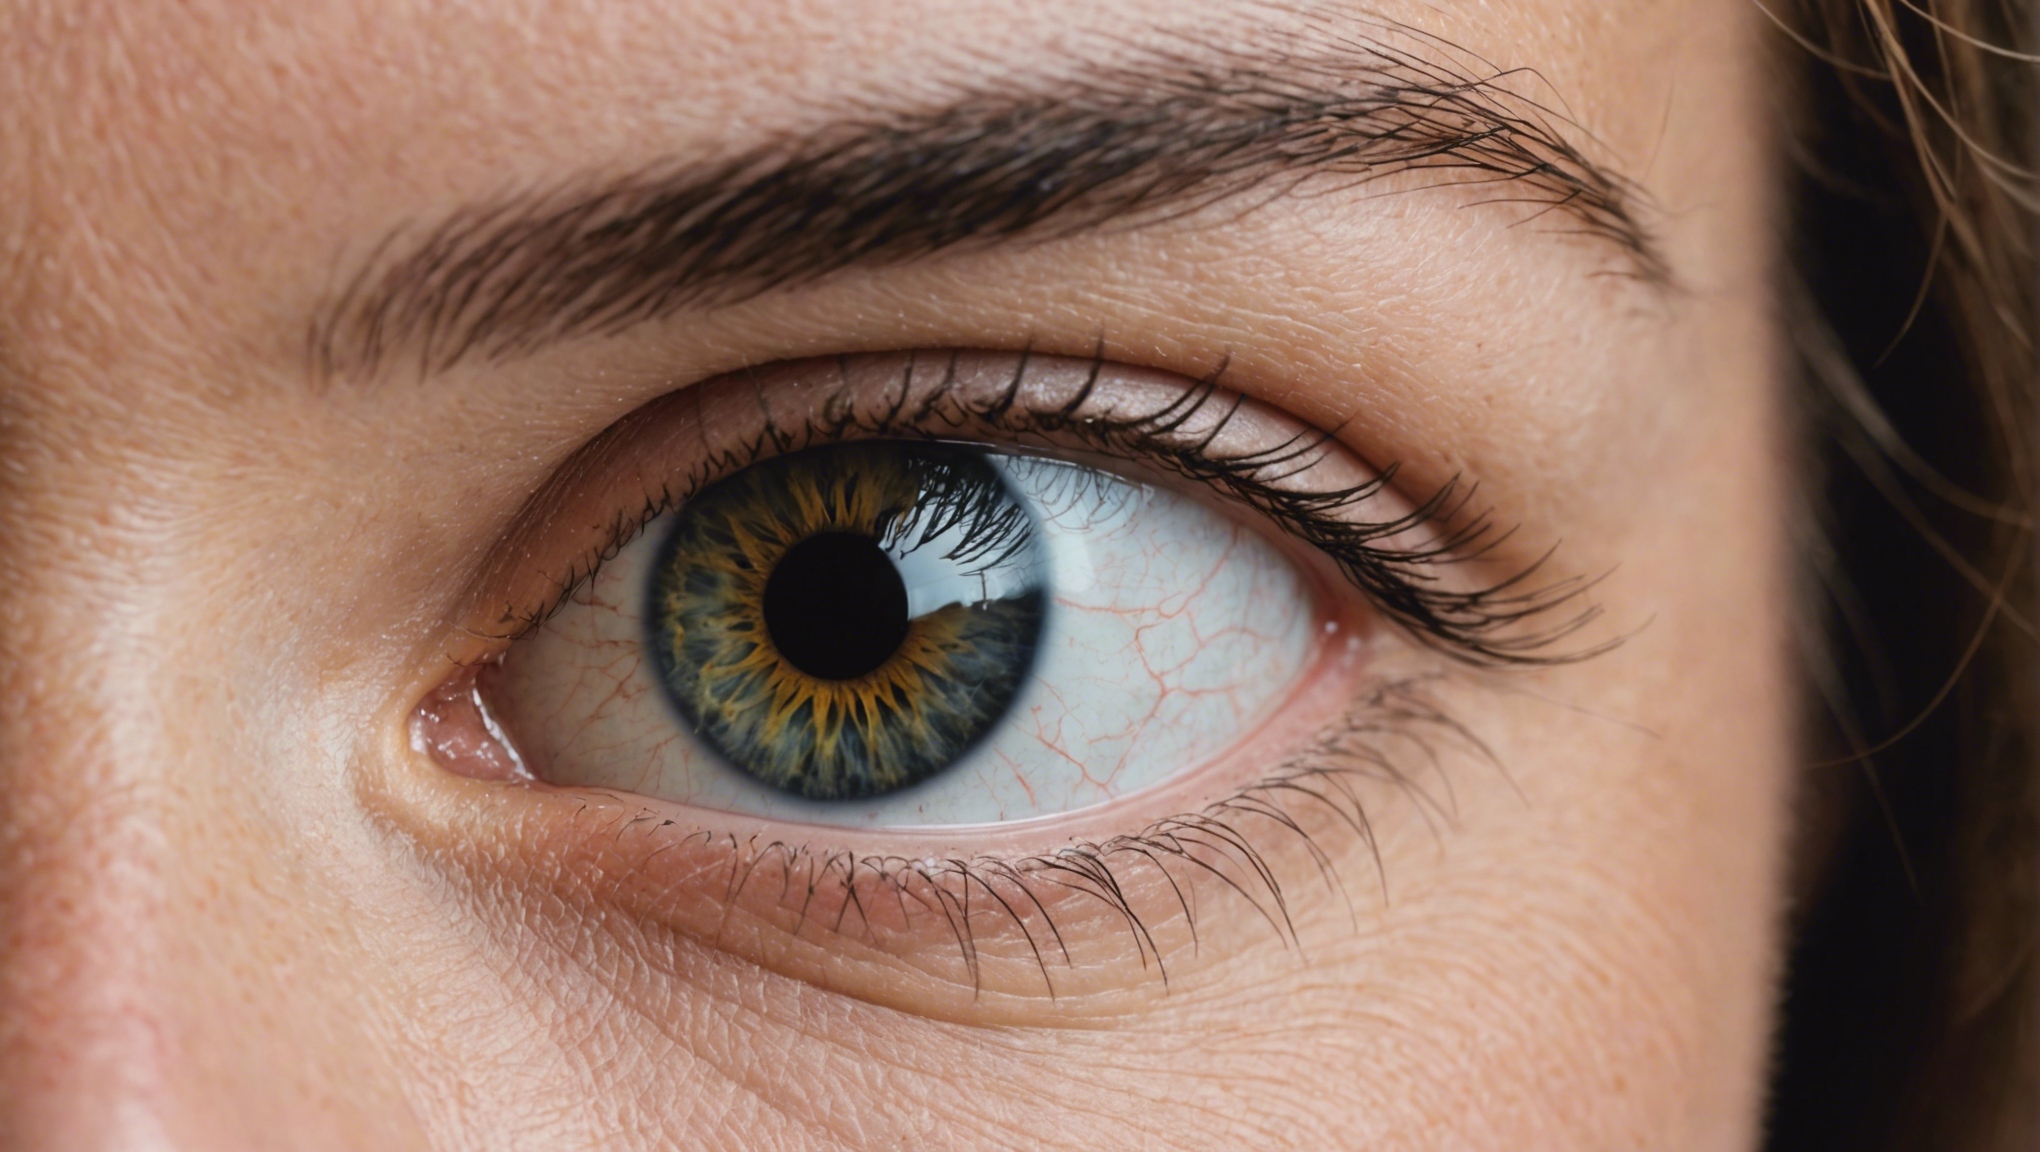 le syndrome de l'œil sec est un trouble affectant la lubrification de l'œil, pouvant causer des irritations et des inconforts oculaires. découvrez les symptômes, les causes et les traitements associés à ce syndrome.